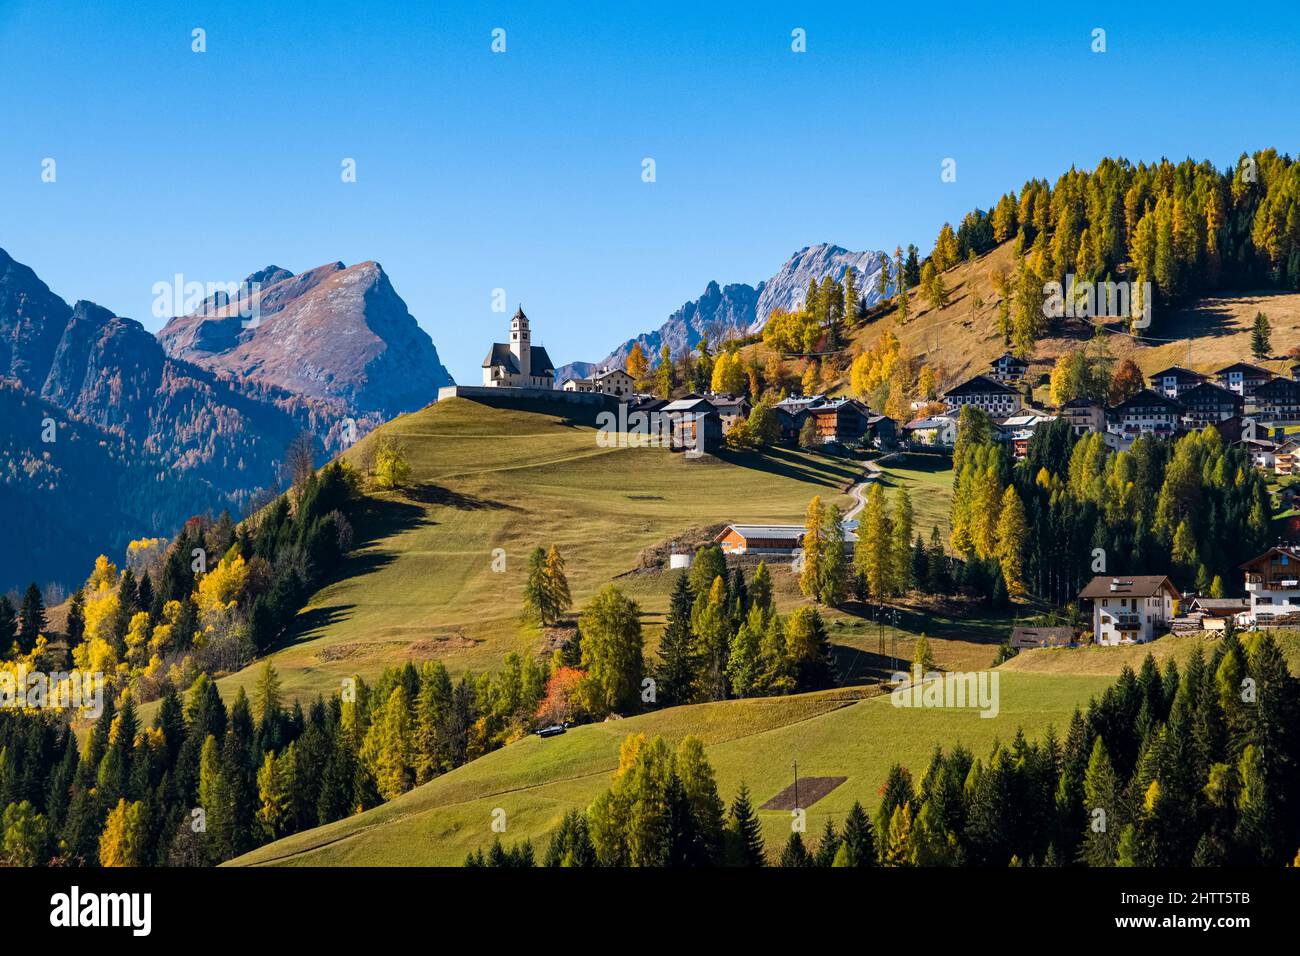 Case e chiesa del villaggio Colle Santa Lucia, circondato da larici e pini colorati in autunno, Dolomiti montagne in lontananza. Foto Stock